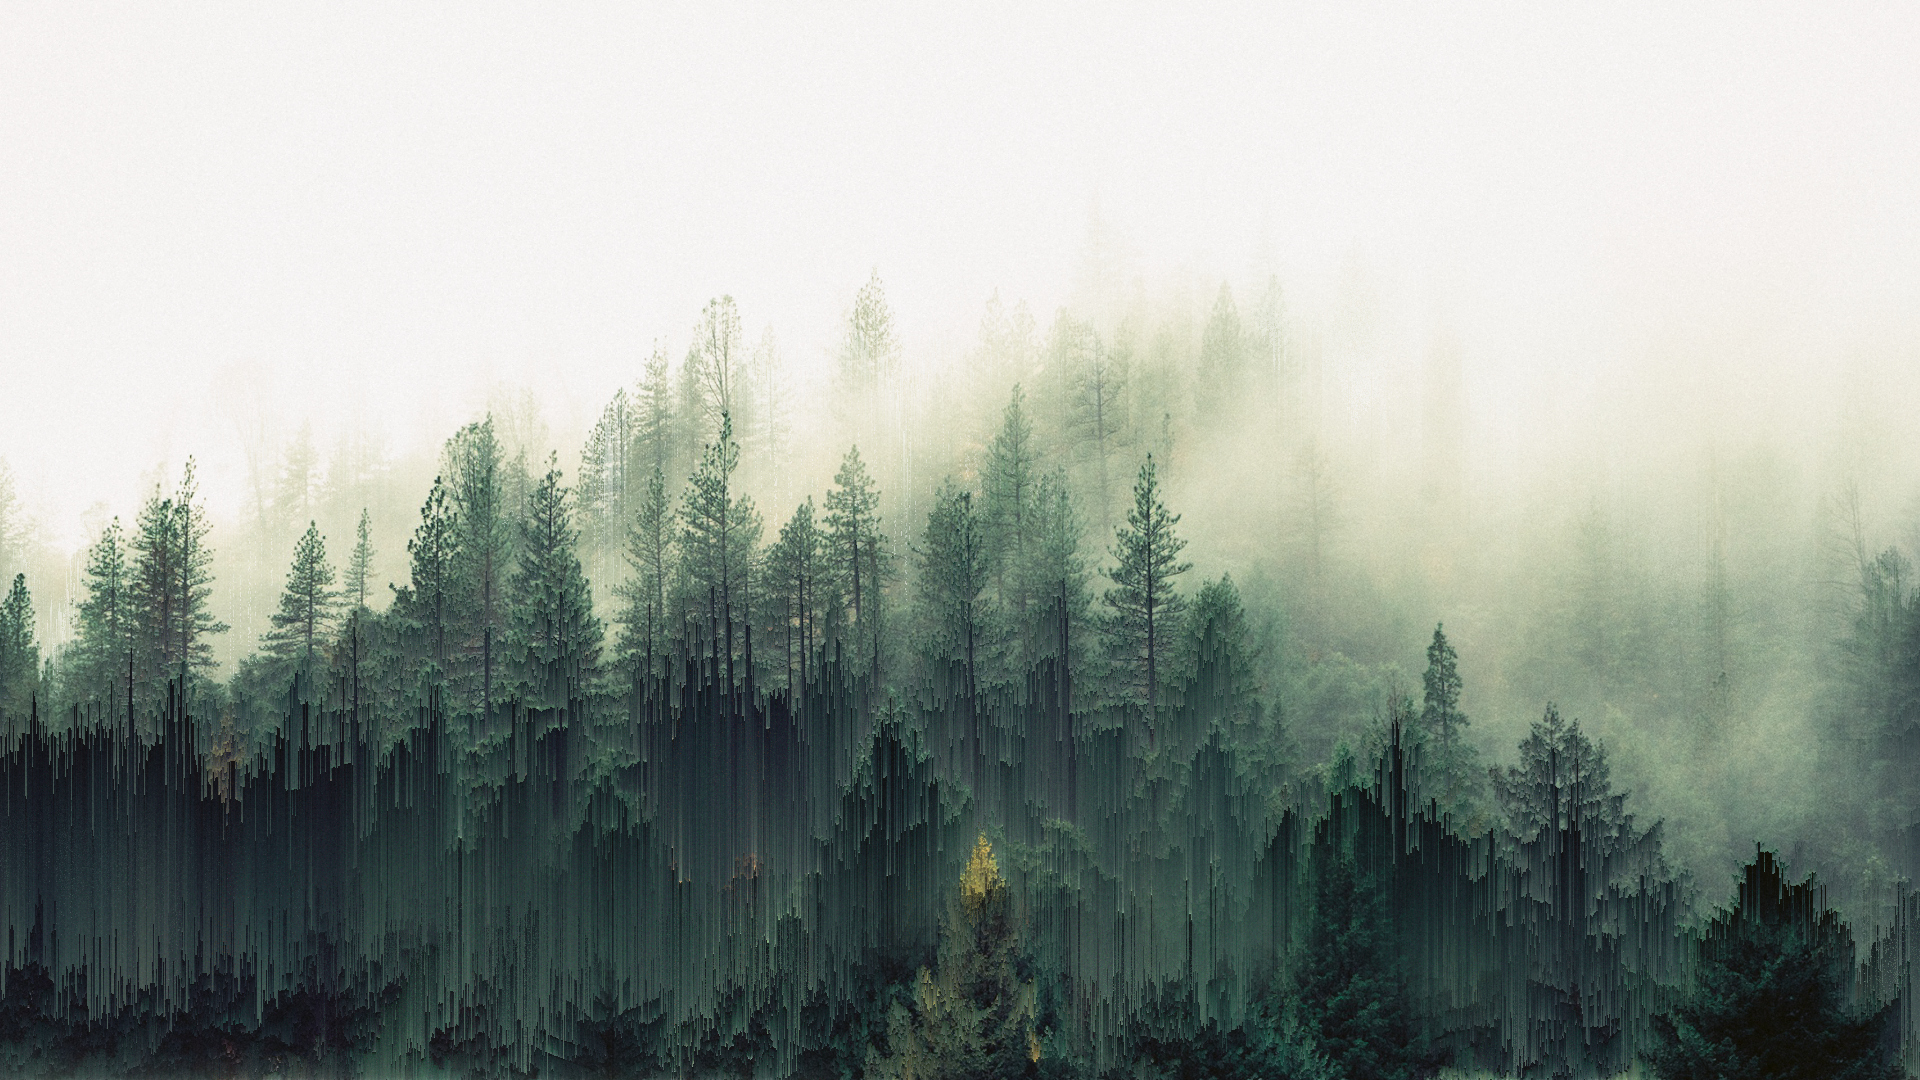 General 1920x1080 forest trees mist pixel sorting glitch art green